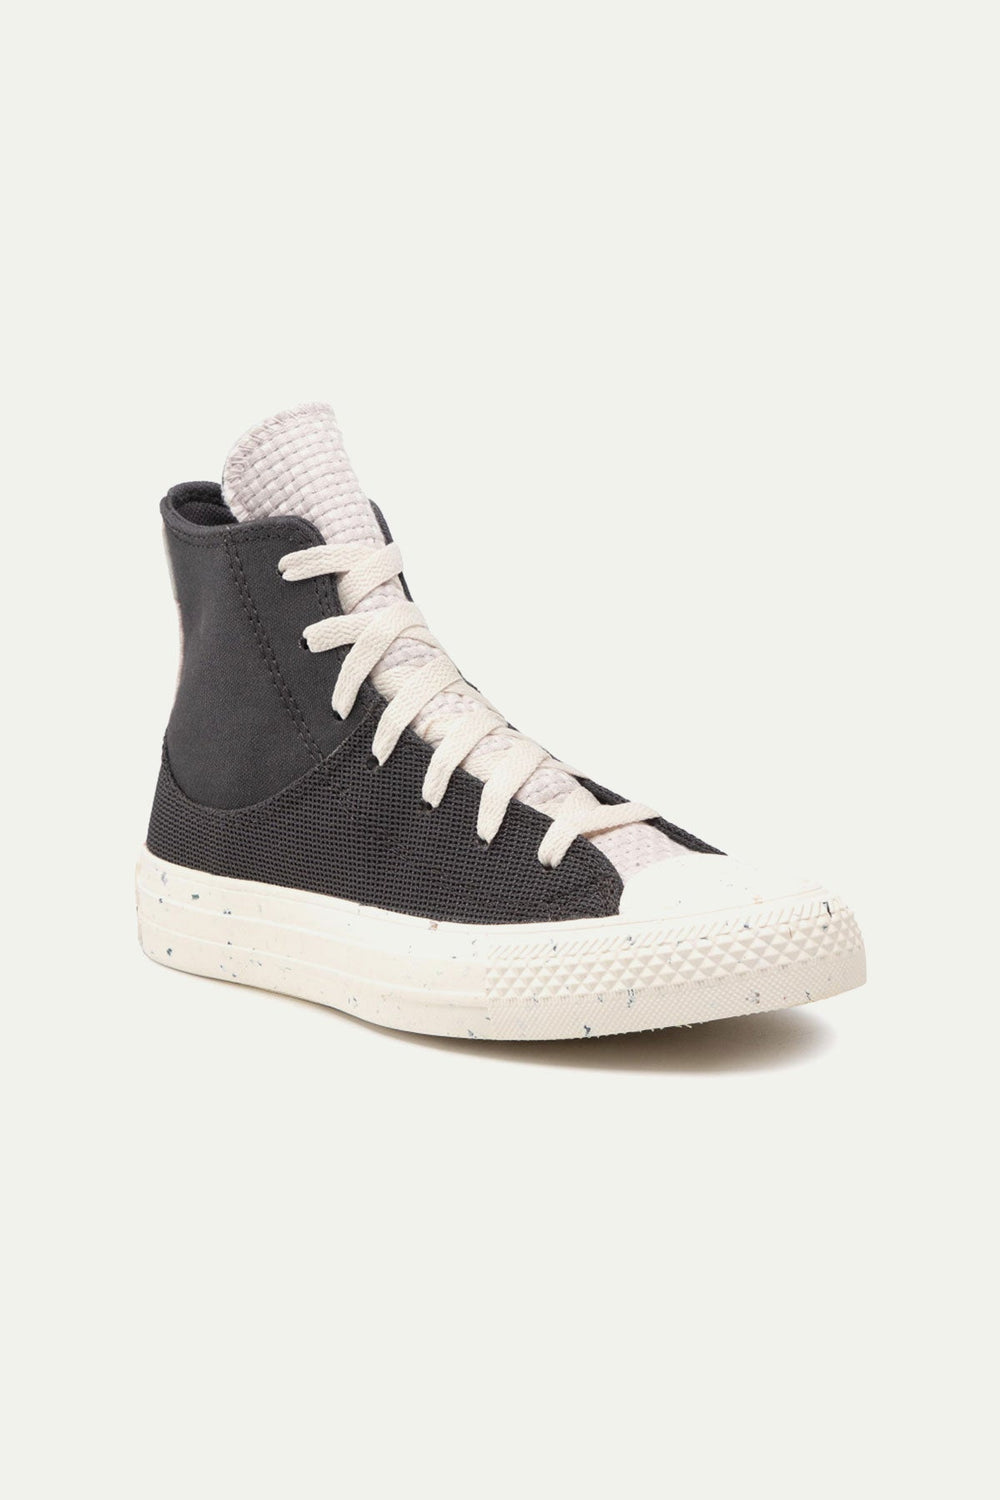 נעלי אולסטאר Chuck Taylor גבוהות בצבע שחור - Converse